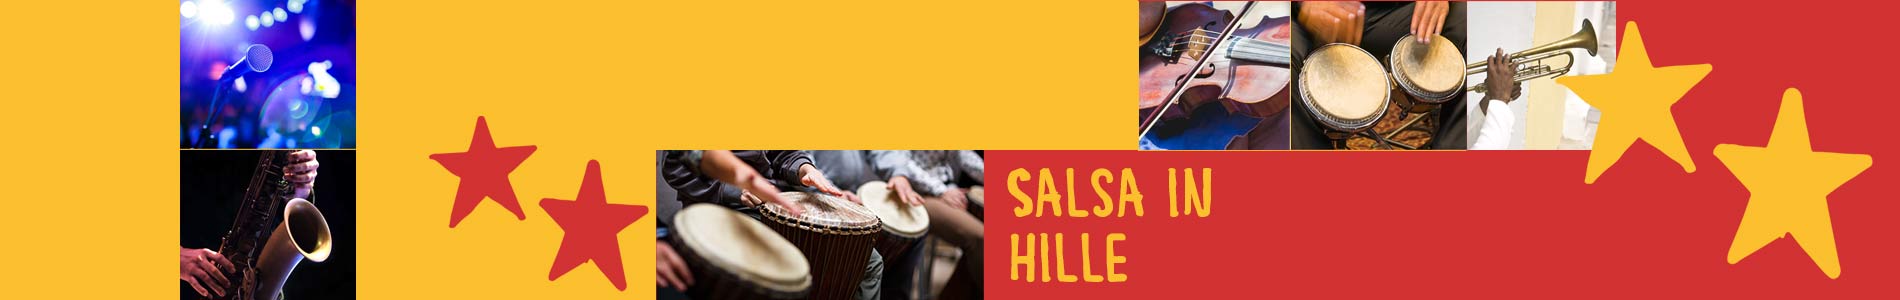 Salsa in Hille – Salsa lernen und tanzen, Tanzkurse, Partys, Veranstaltungen